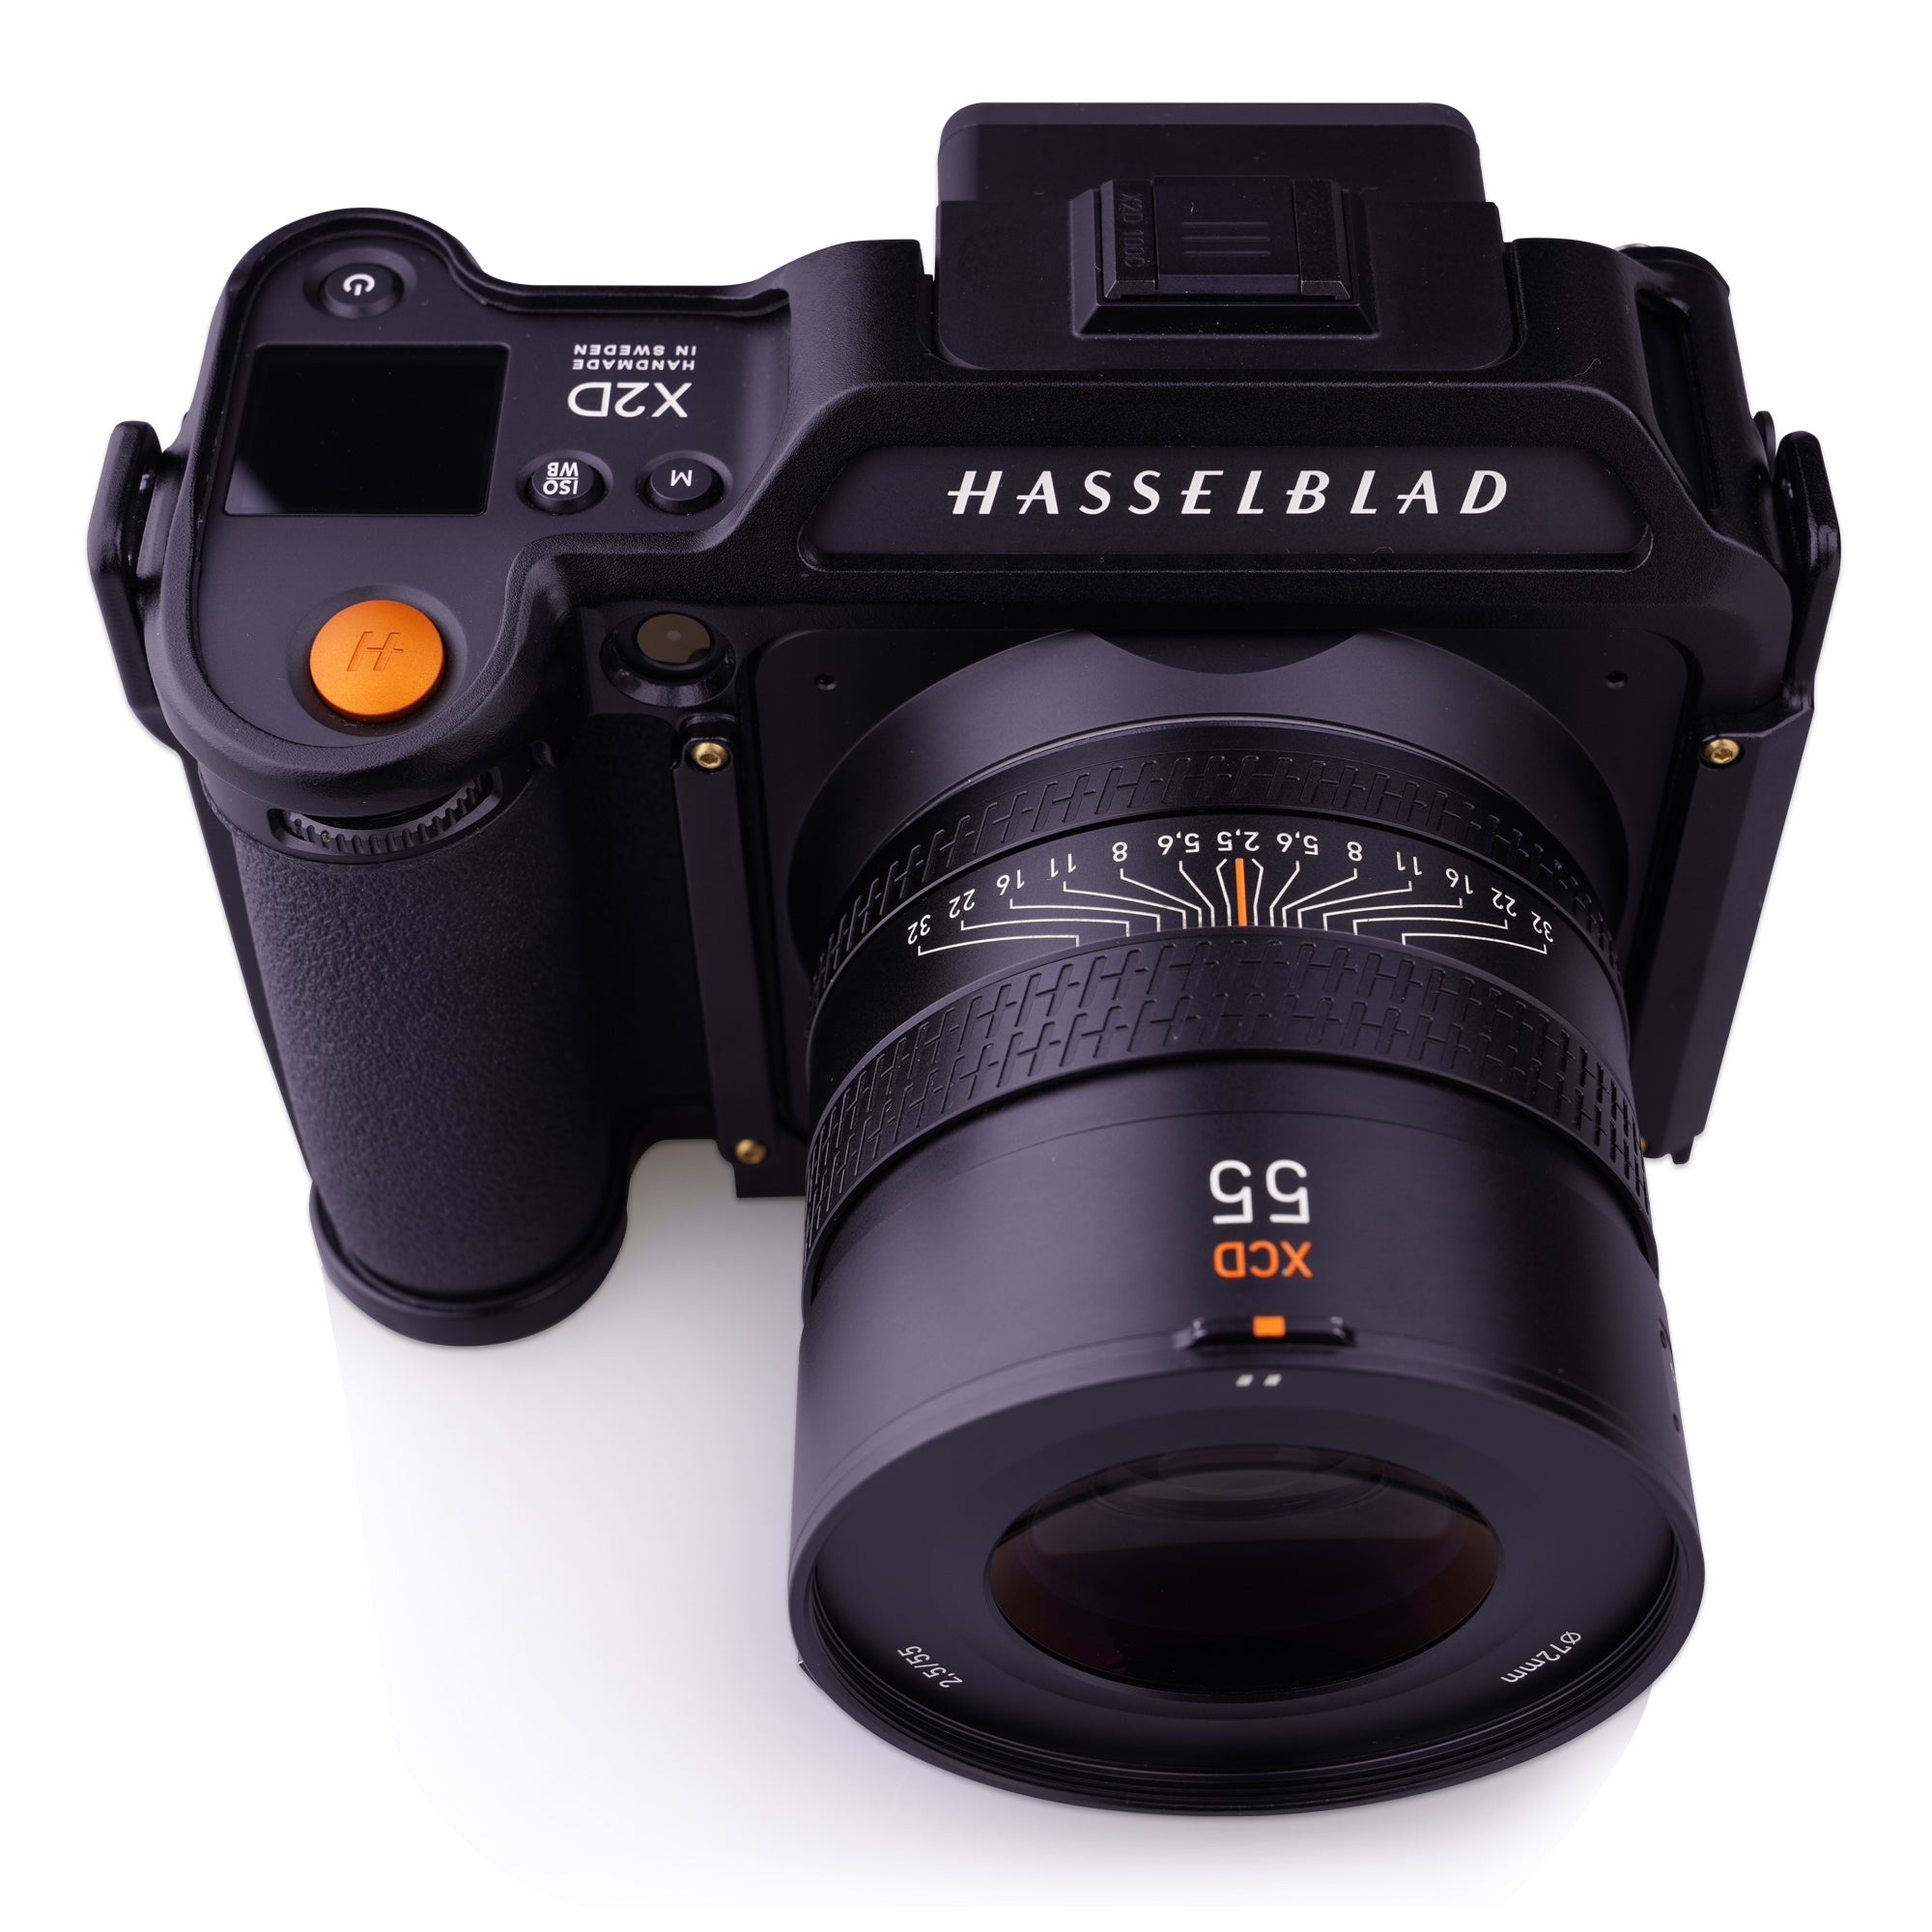 Lanhorse Modular Camera Cage for Hasselblad X2D 100C